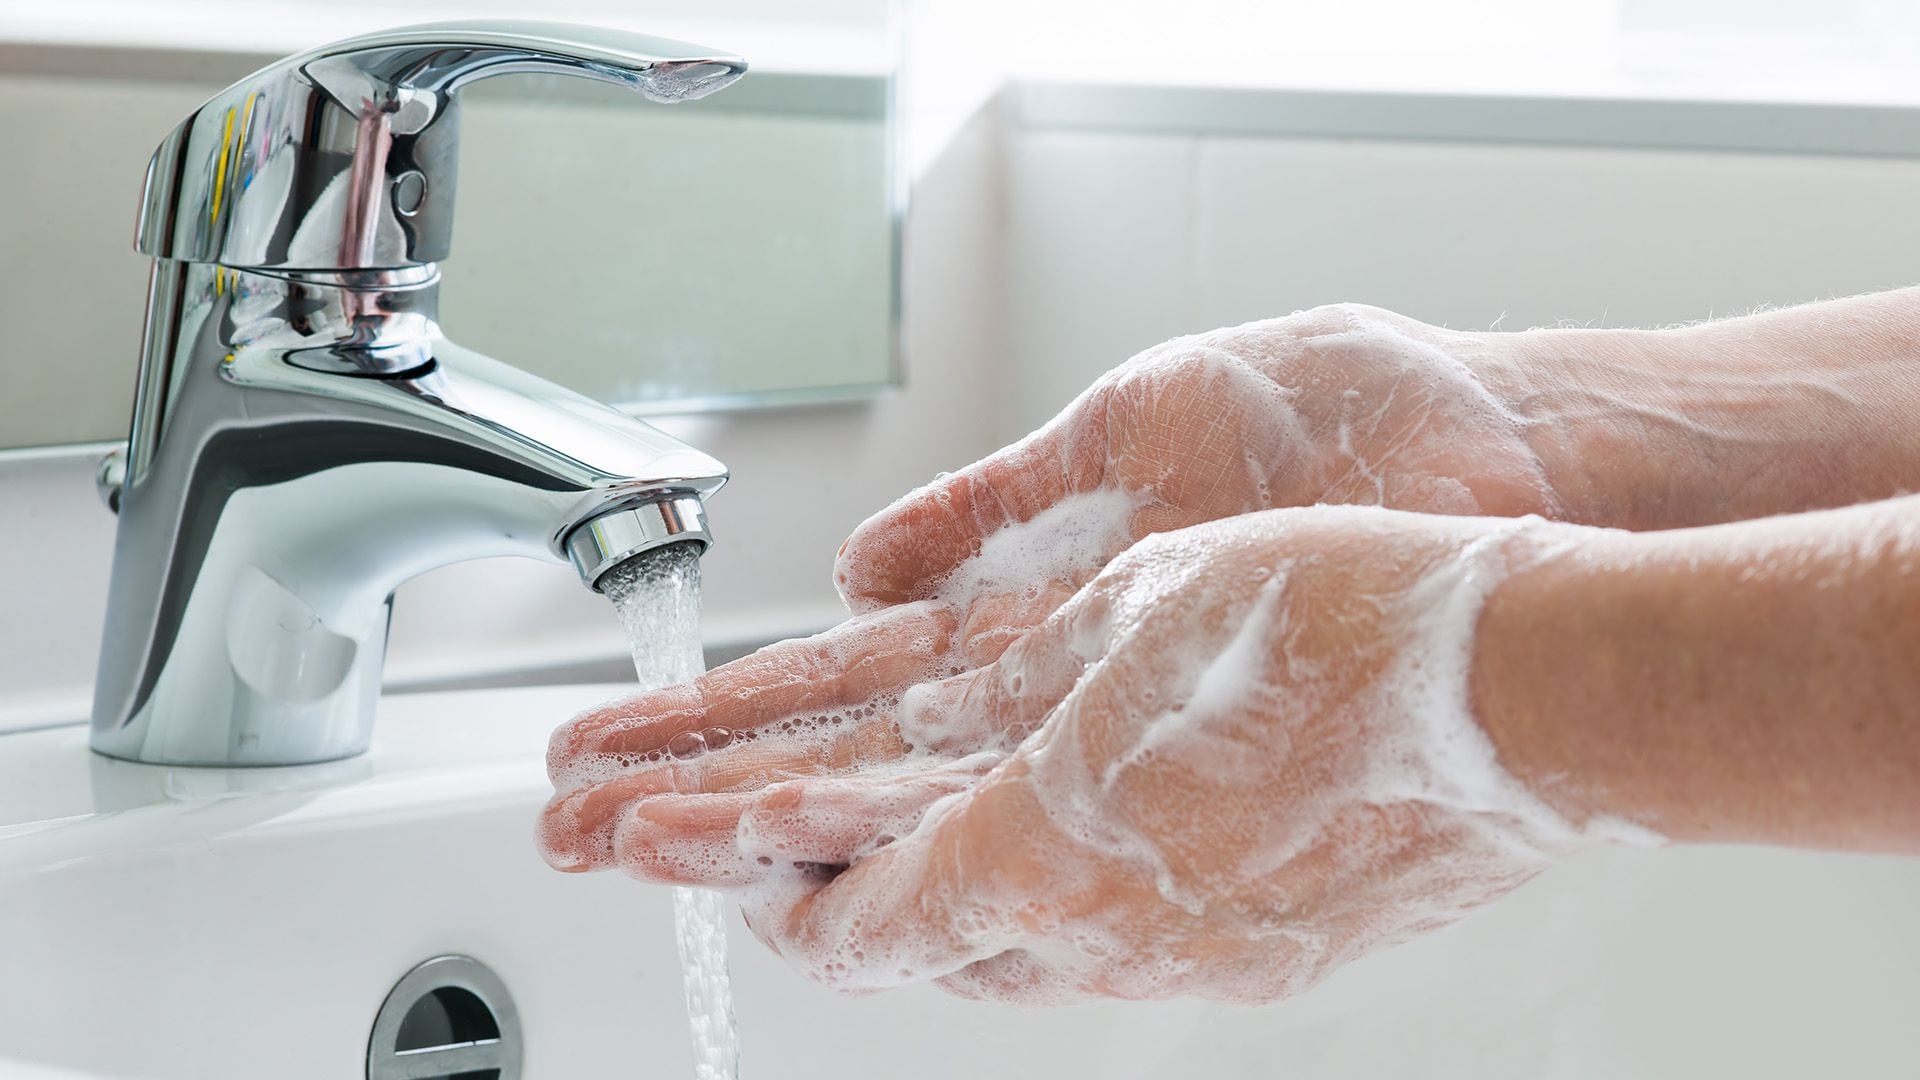 Ante mordeduras o rasguños de animales, es vital lavar la herida con agua y jabón y buscar atención médica inmediata (Getty)